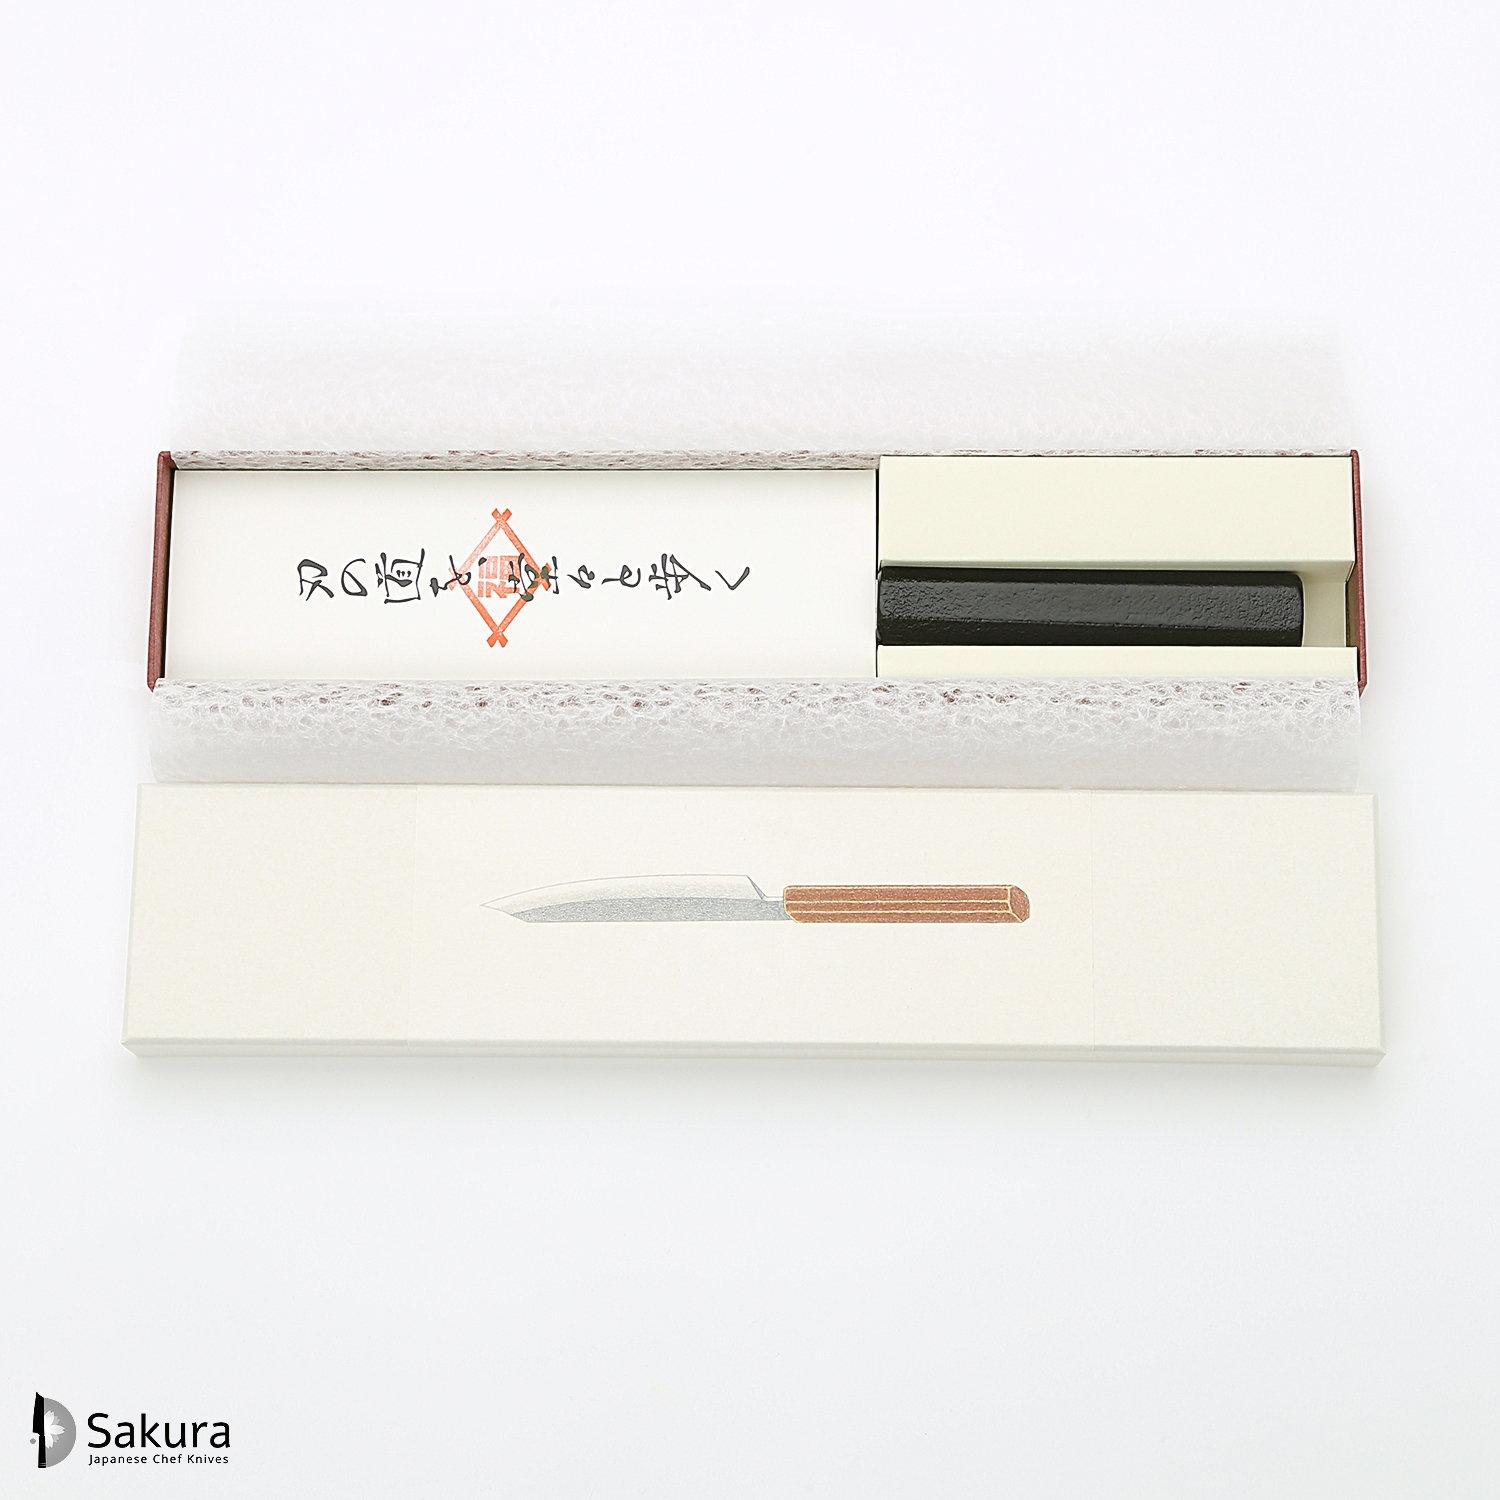 סכין רב-תכליתית בּוּנְקָה 180מ״מ מחושלת בעבודת יד 3 שכבות: פלדת פחמן יפנית מתקדמת מסוג Ginsan Silver#3 עטופה פלדת אל-חלד בגימור דמשק גימור דמשק האדו יפן